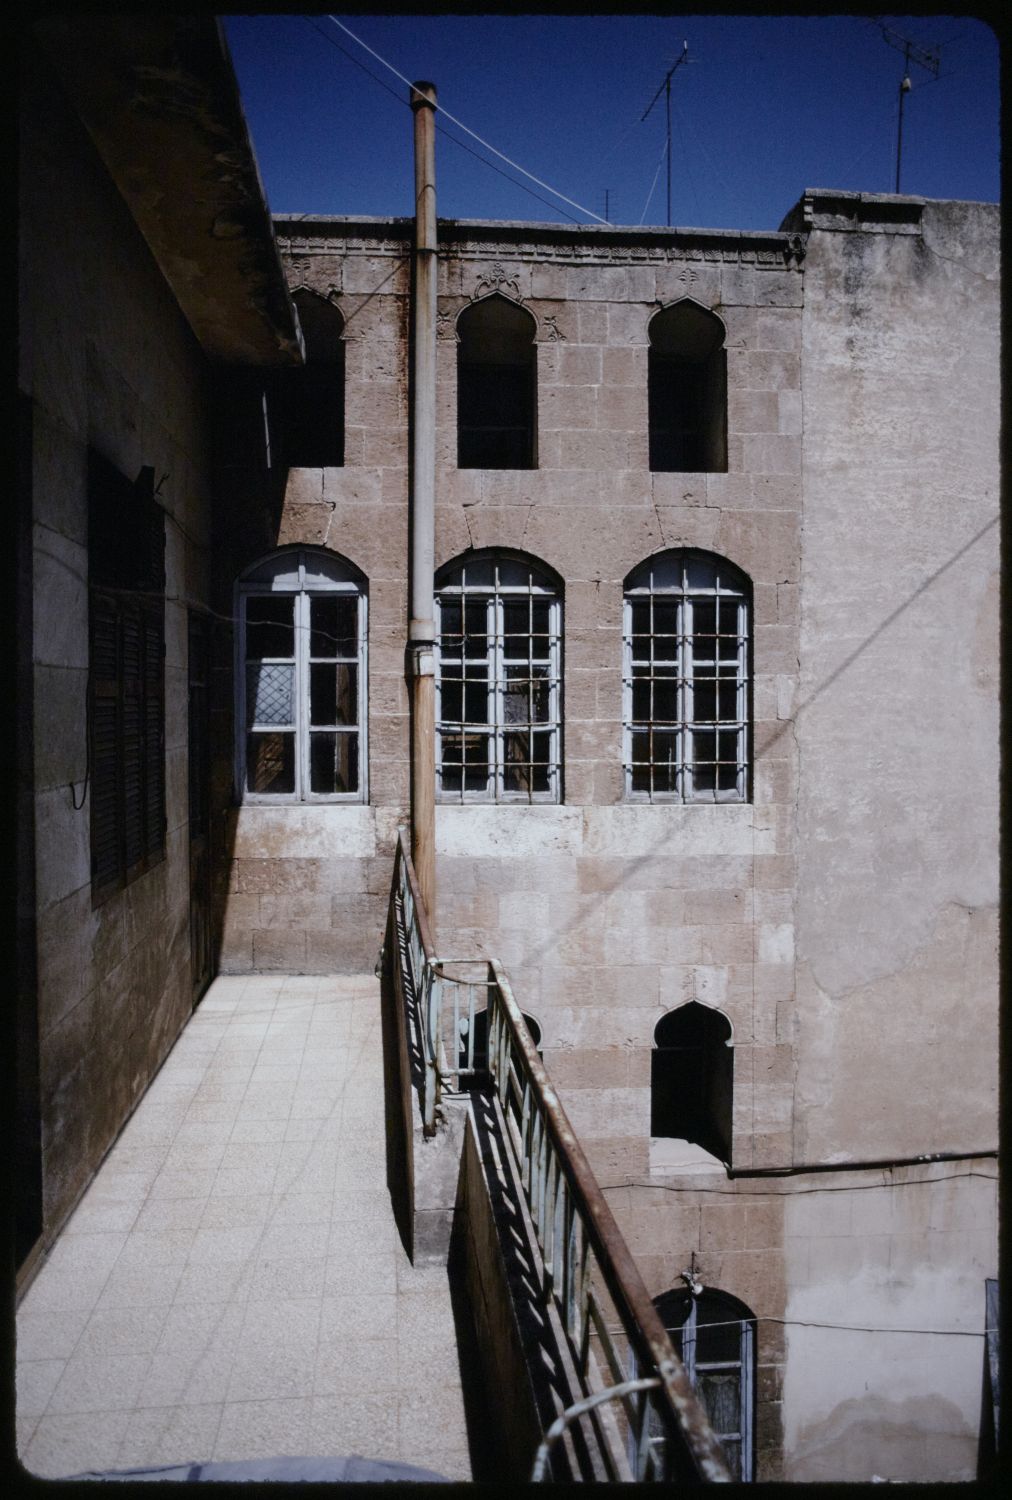 Second floor walkway along courtyard wall